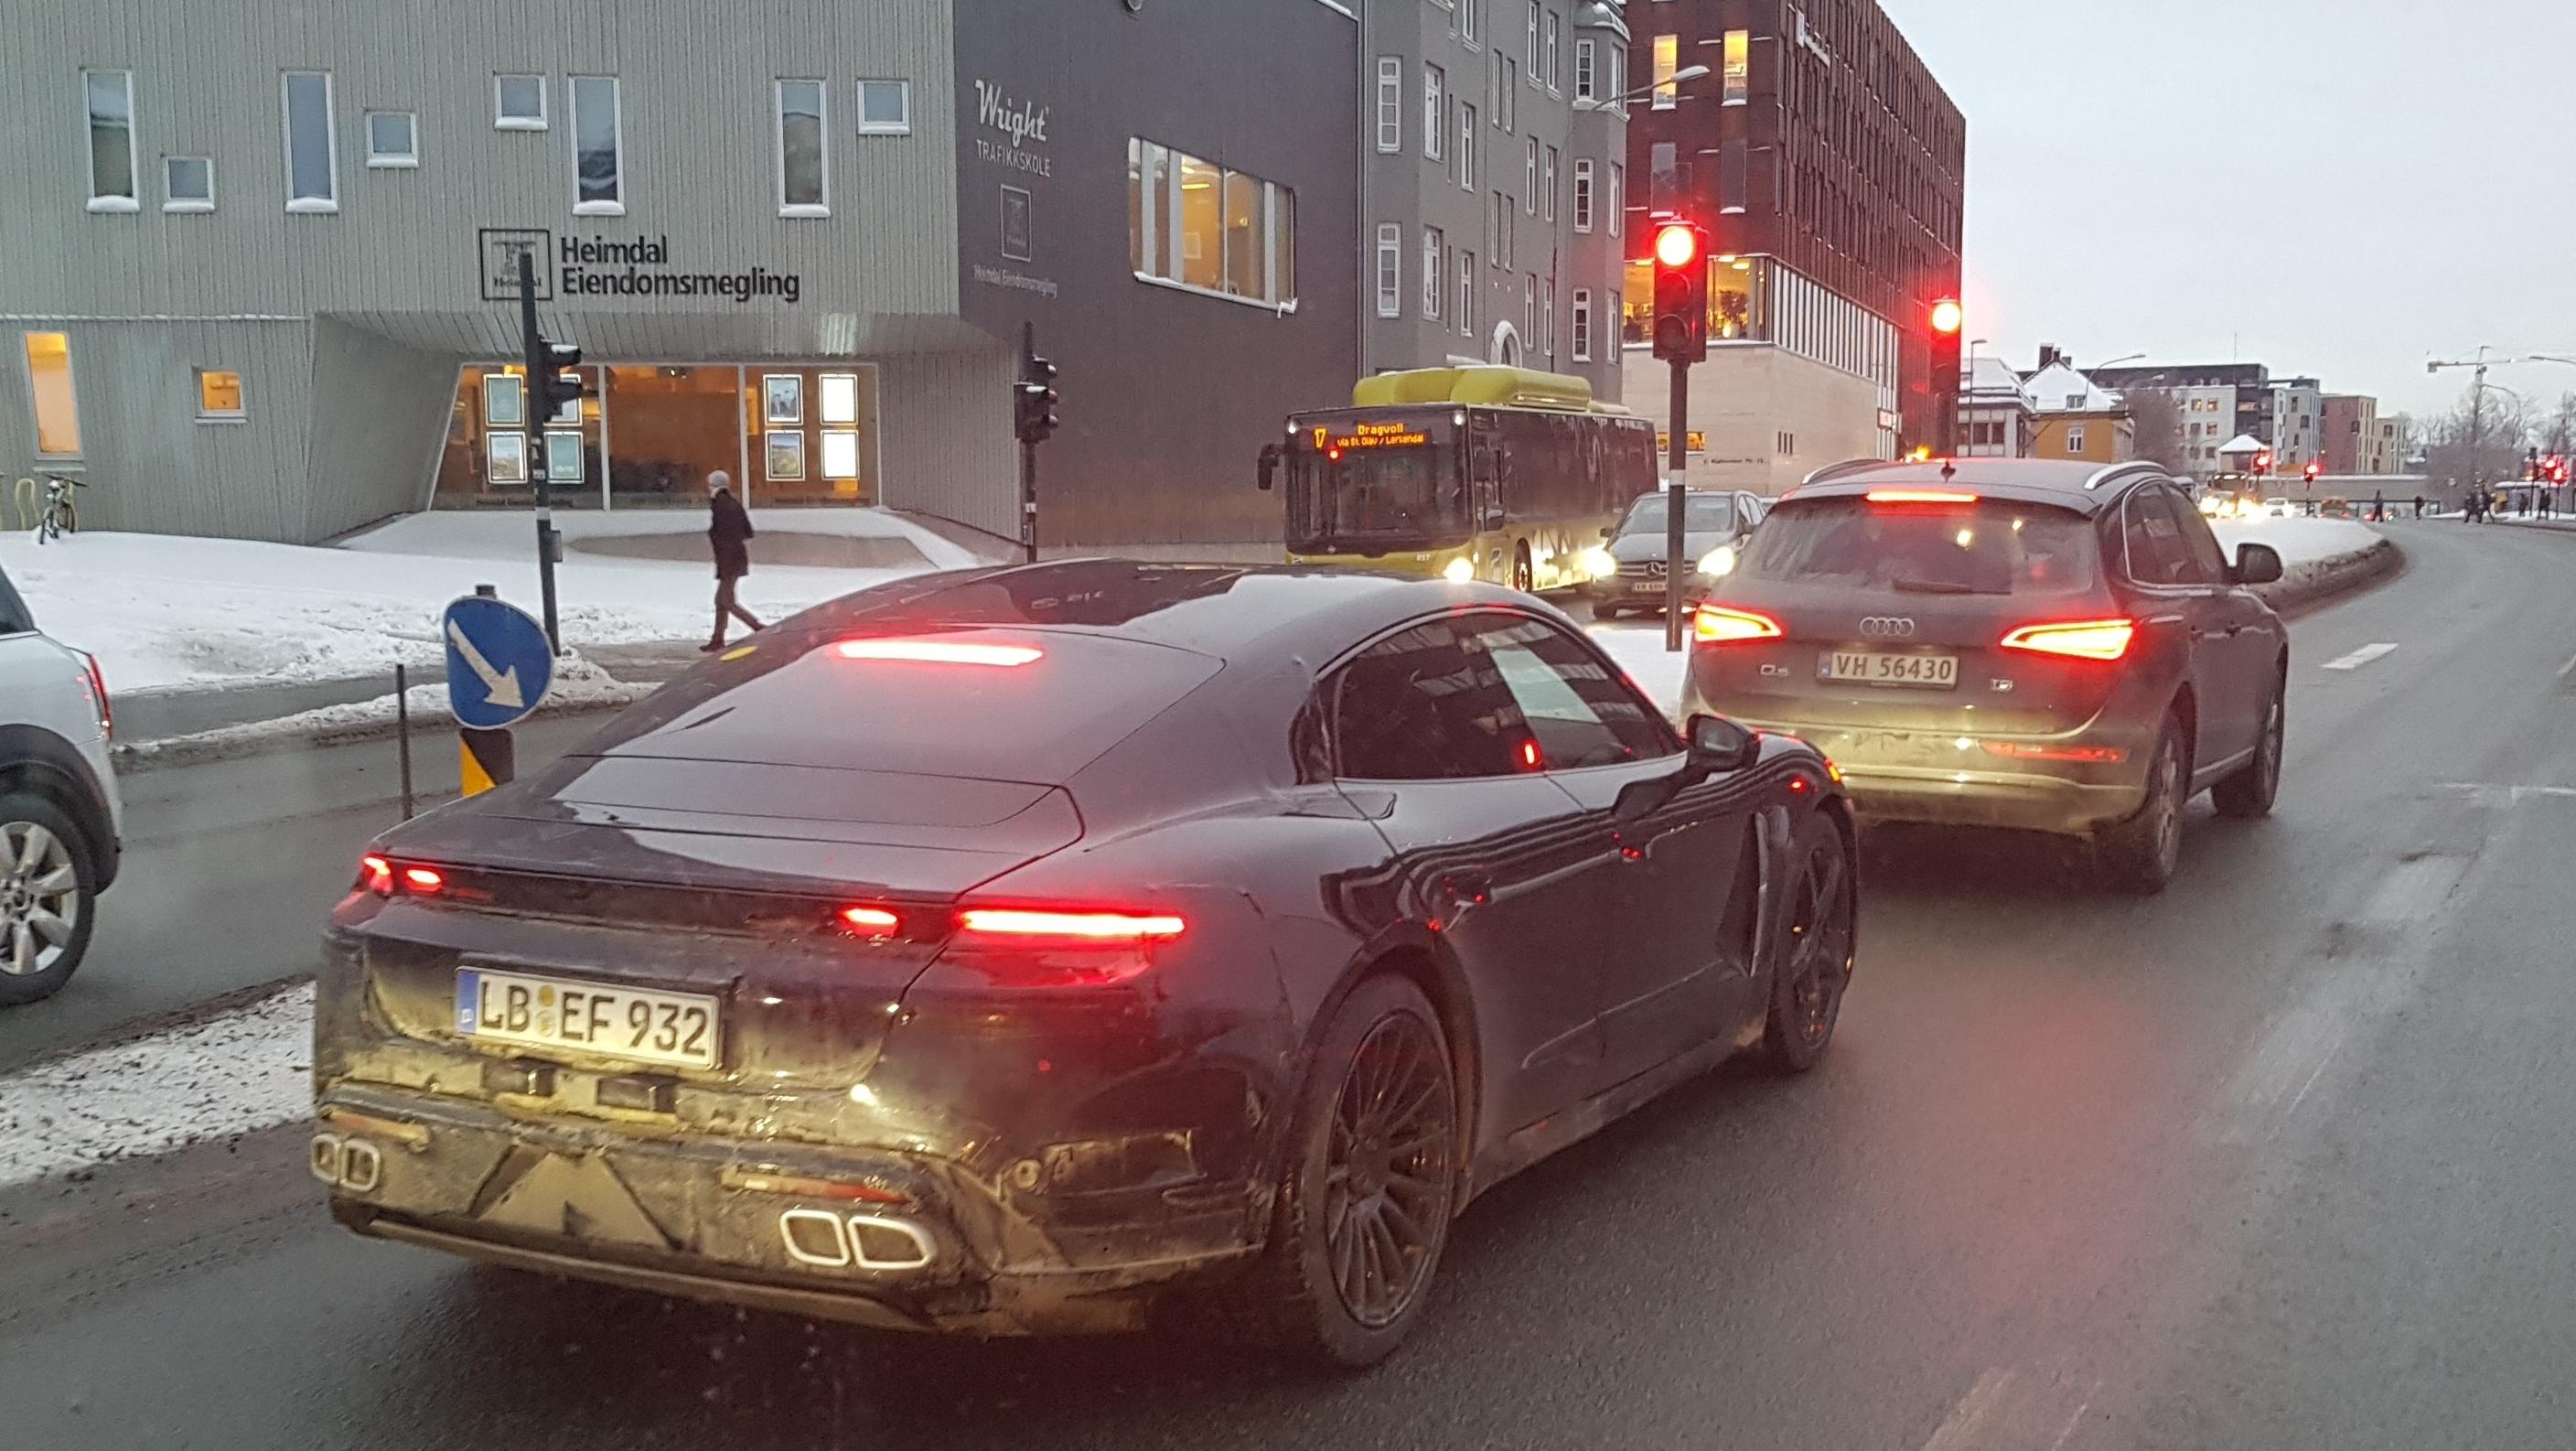 Porschene har også vært å se i Trondheim.